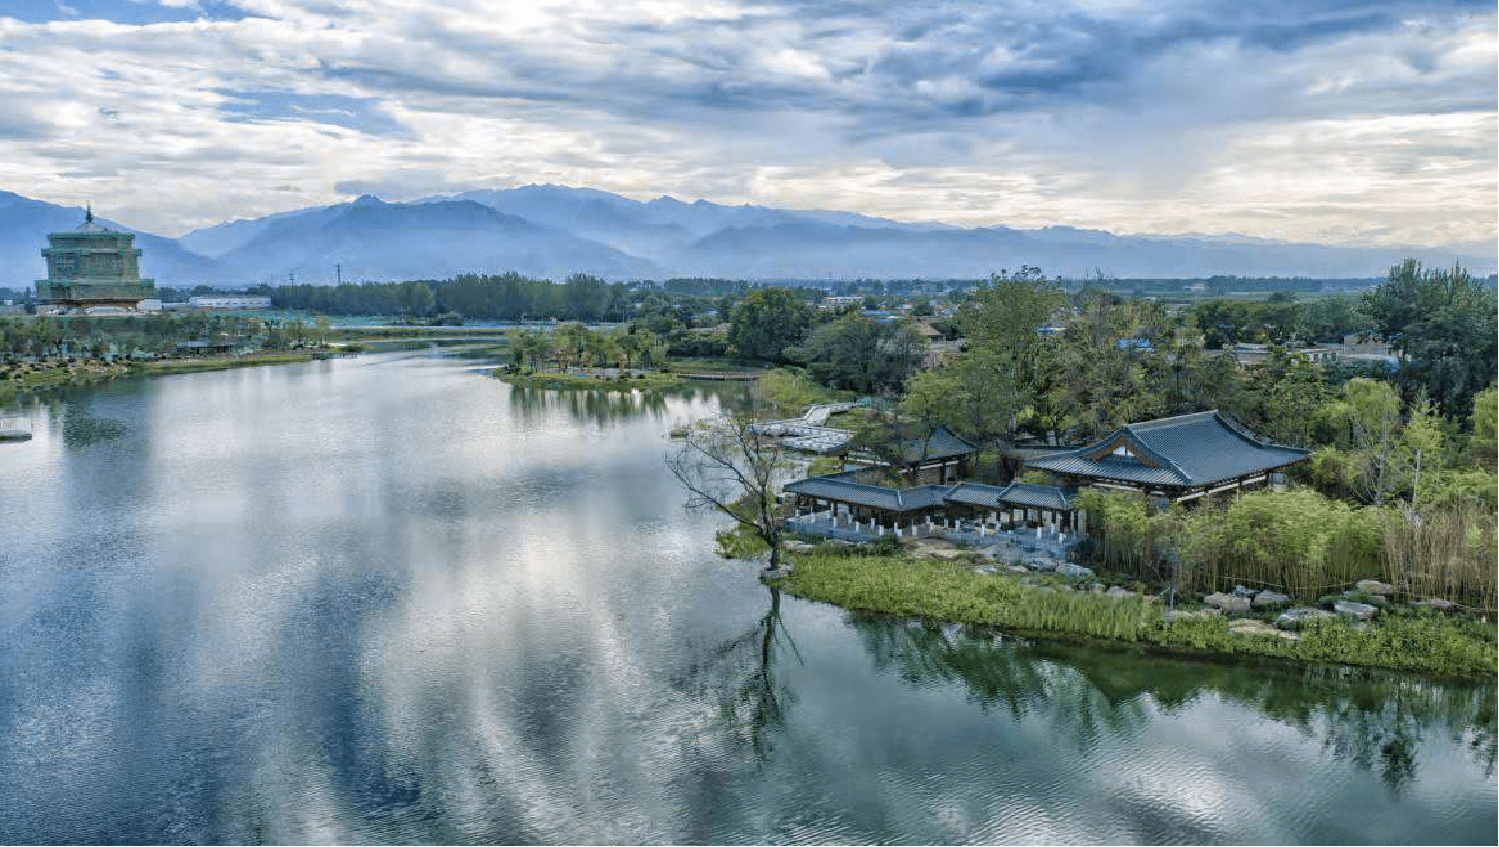 渼陂湖位于西安市鄠邑区涝河西畔,是秦汉上林苑,唐代游览胜地,人文